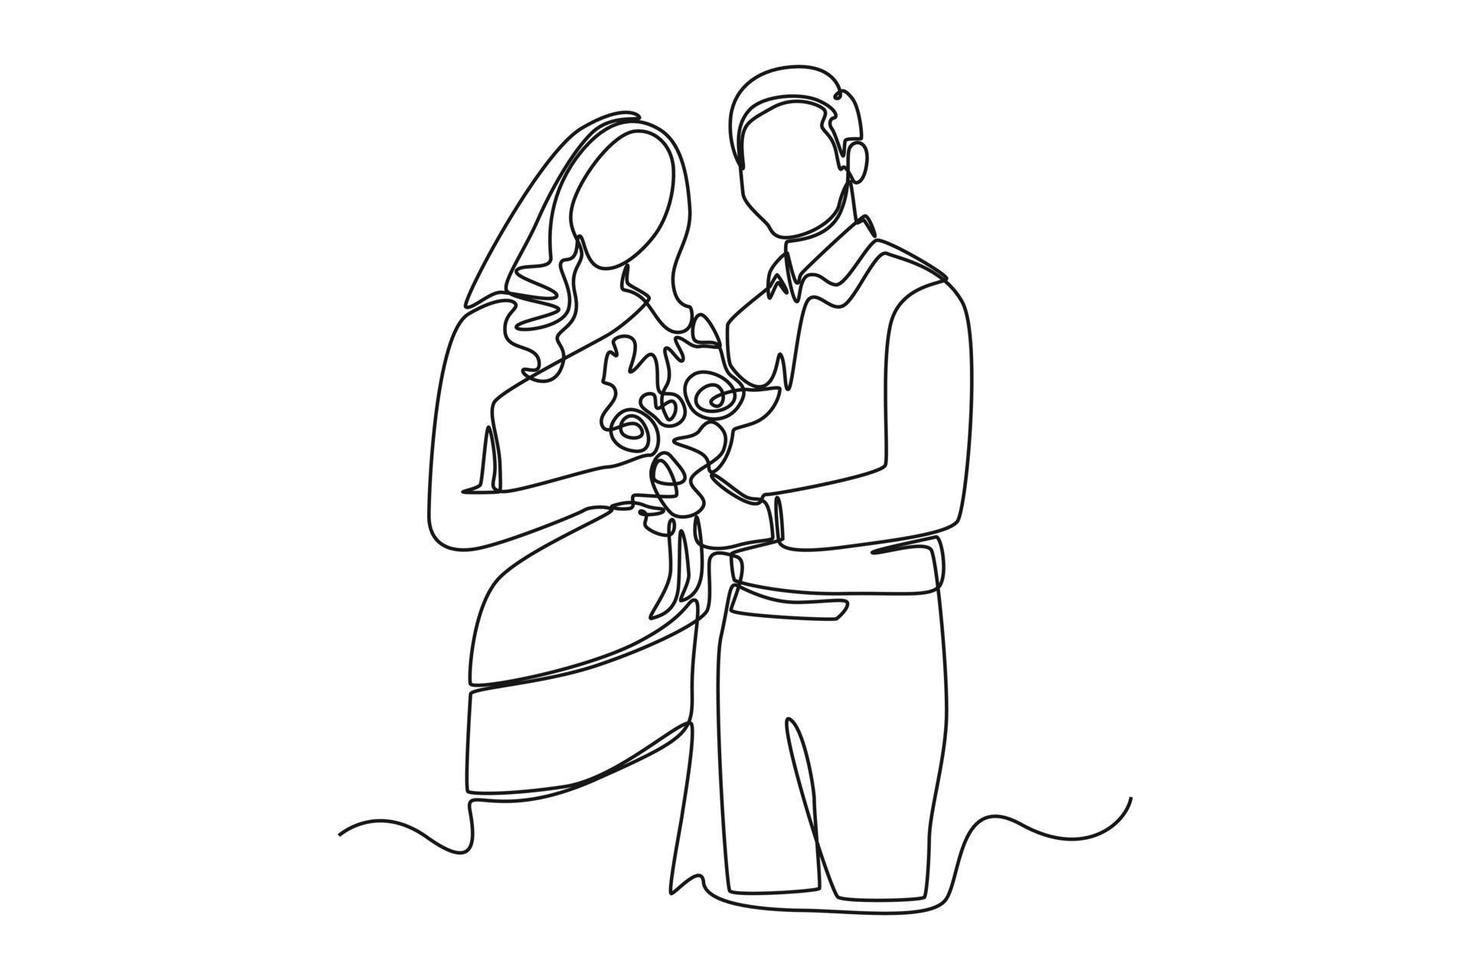 kontinuerlig ett linje teckning brud i en klänning och brudgum stående tillsammans medan innehav en bröllop bukett av blommor. bröllop begrepp. enda linje dra design vektor grafisk illustration.